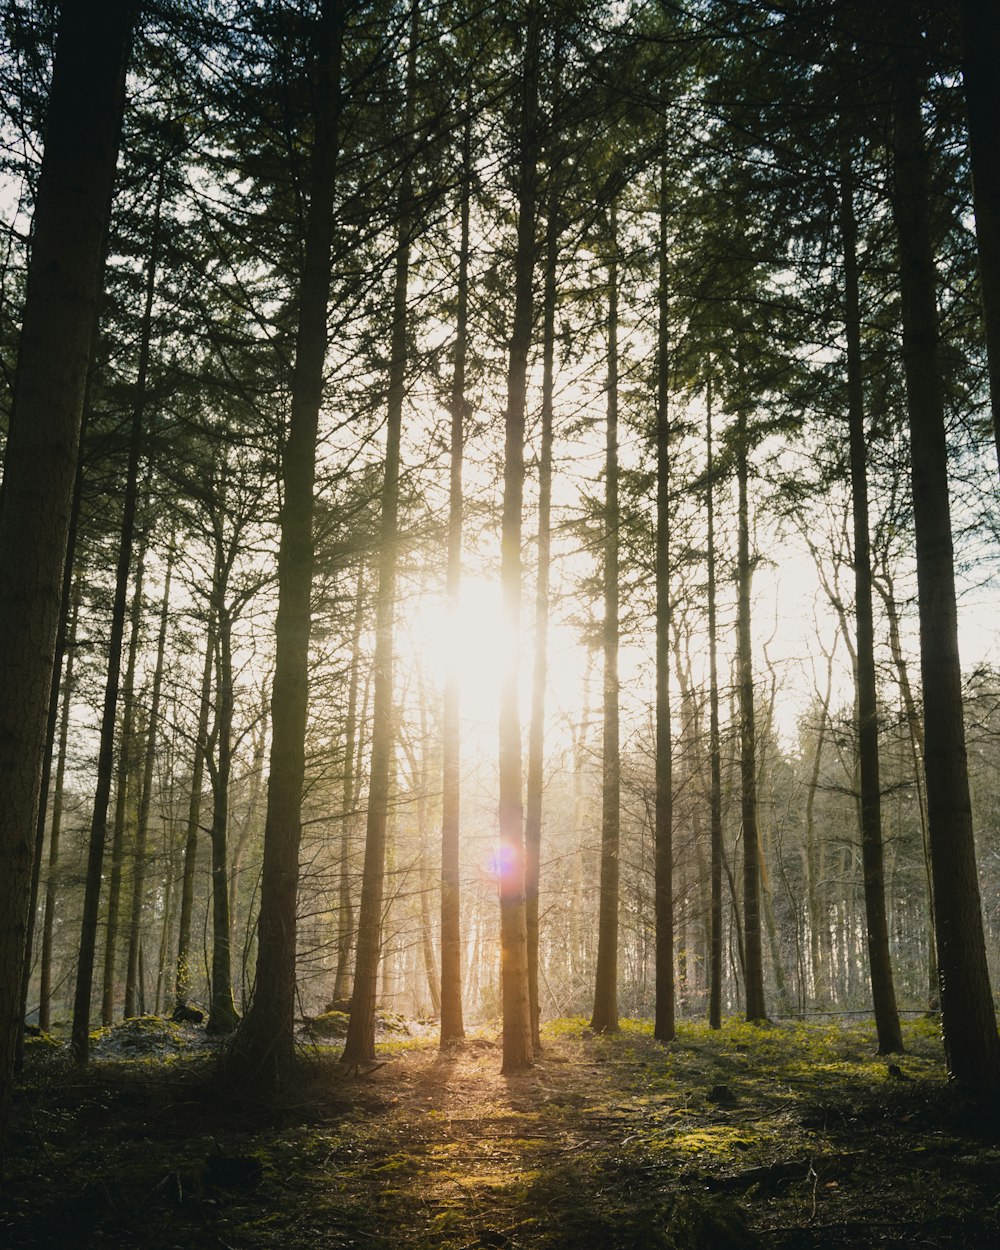 La luz del sol atravesando los bosques